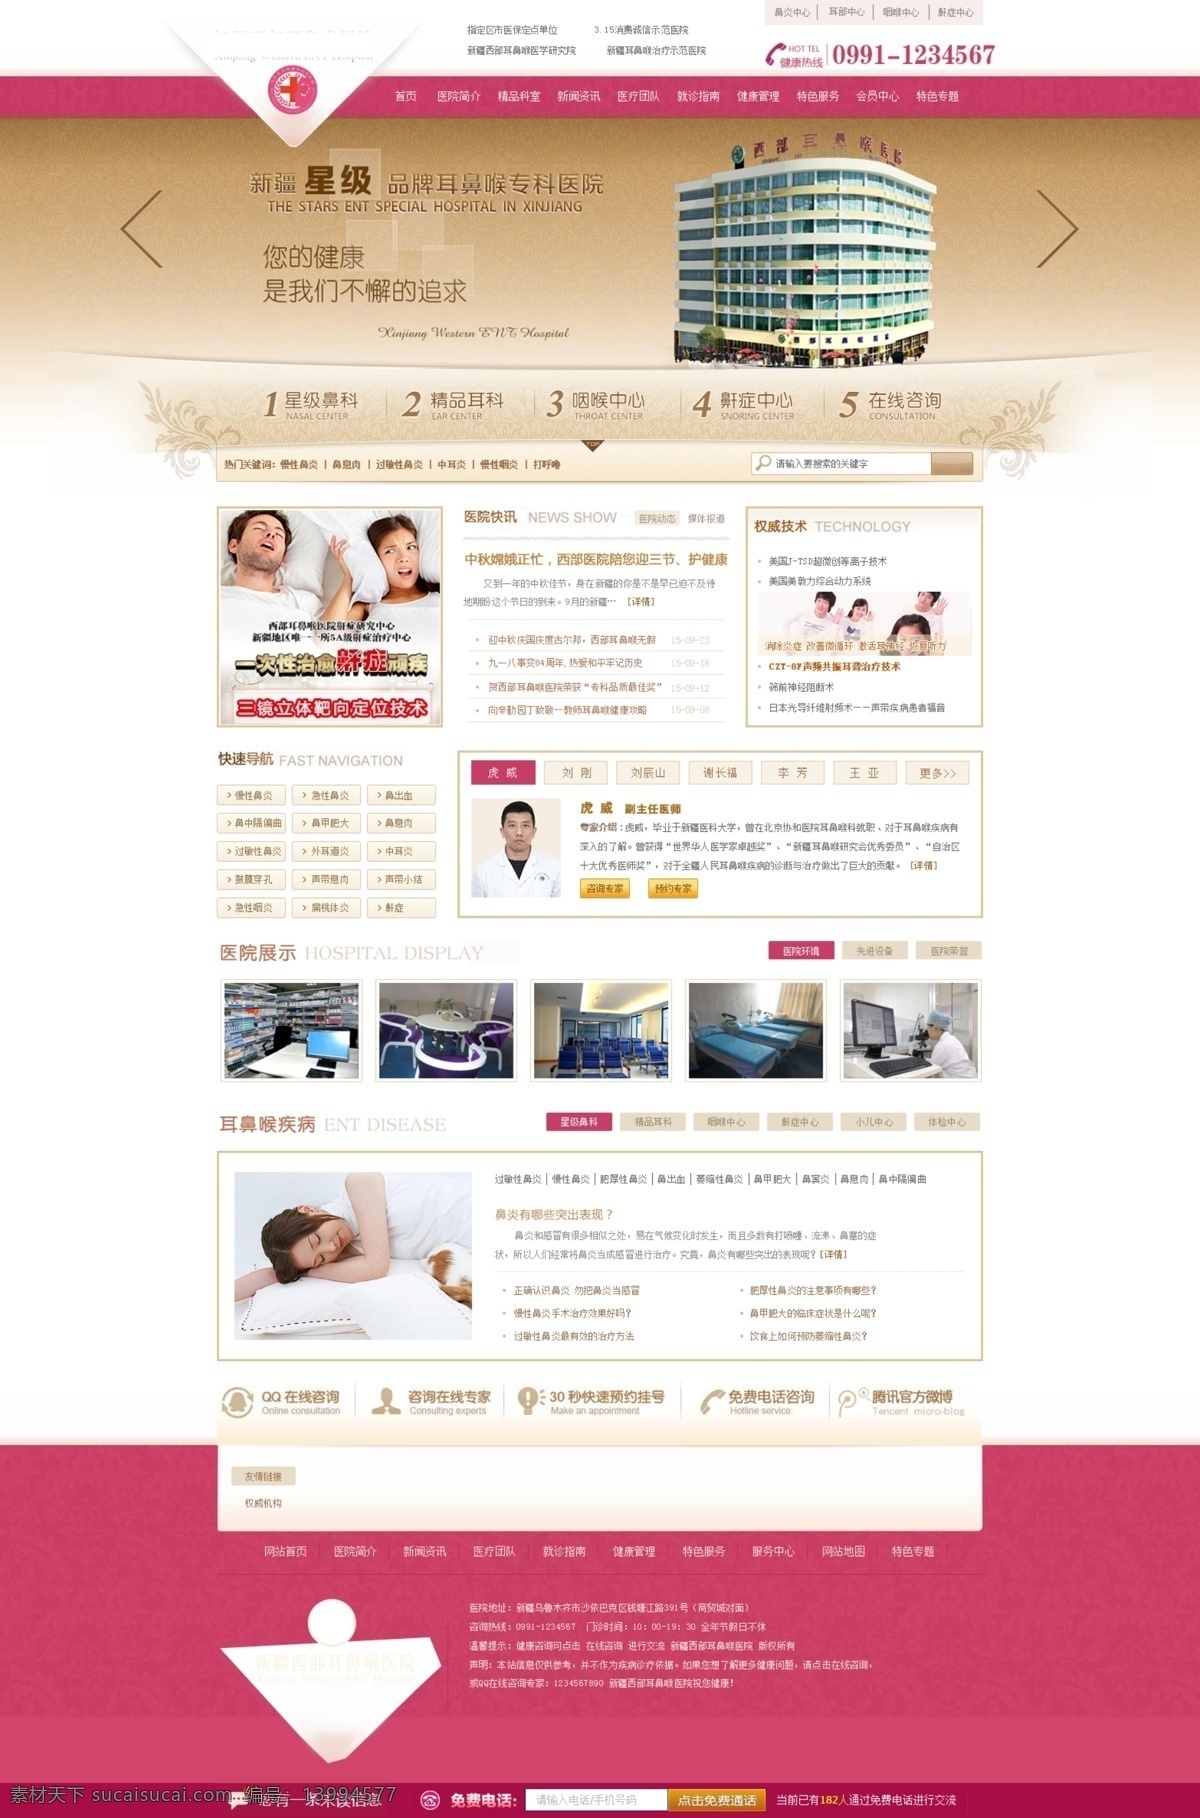 耳鼻喉科医院 网站 网站模版 医院 医院网站 医院网站模板 中文模板 web 界面设计 白色